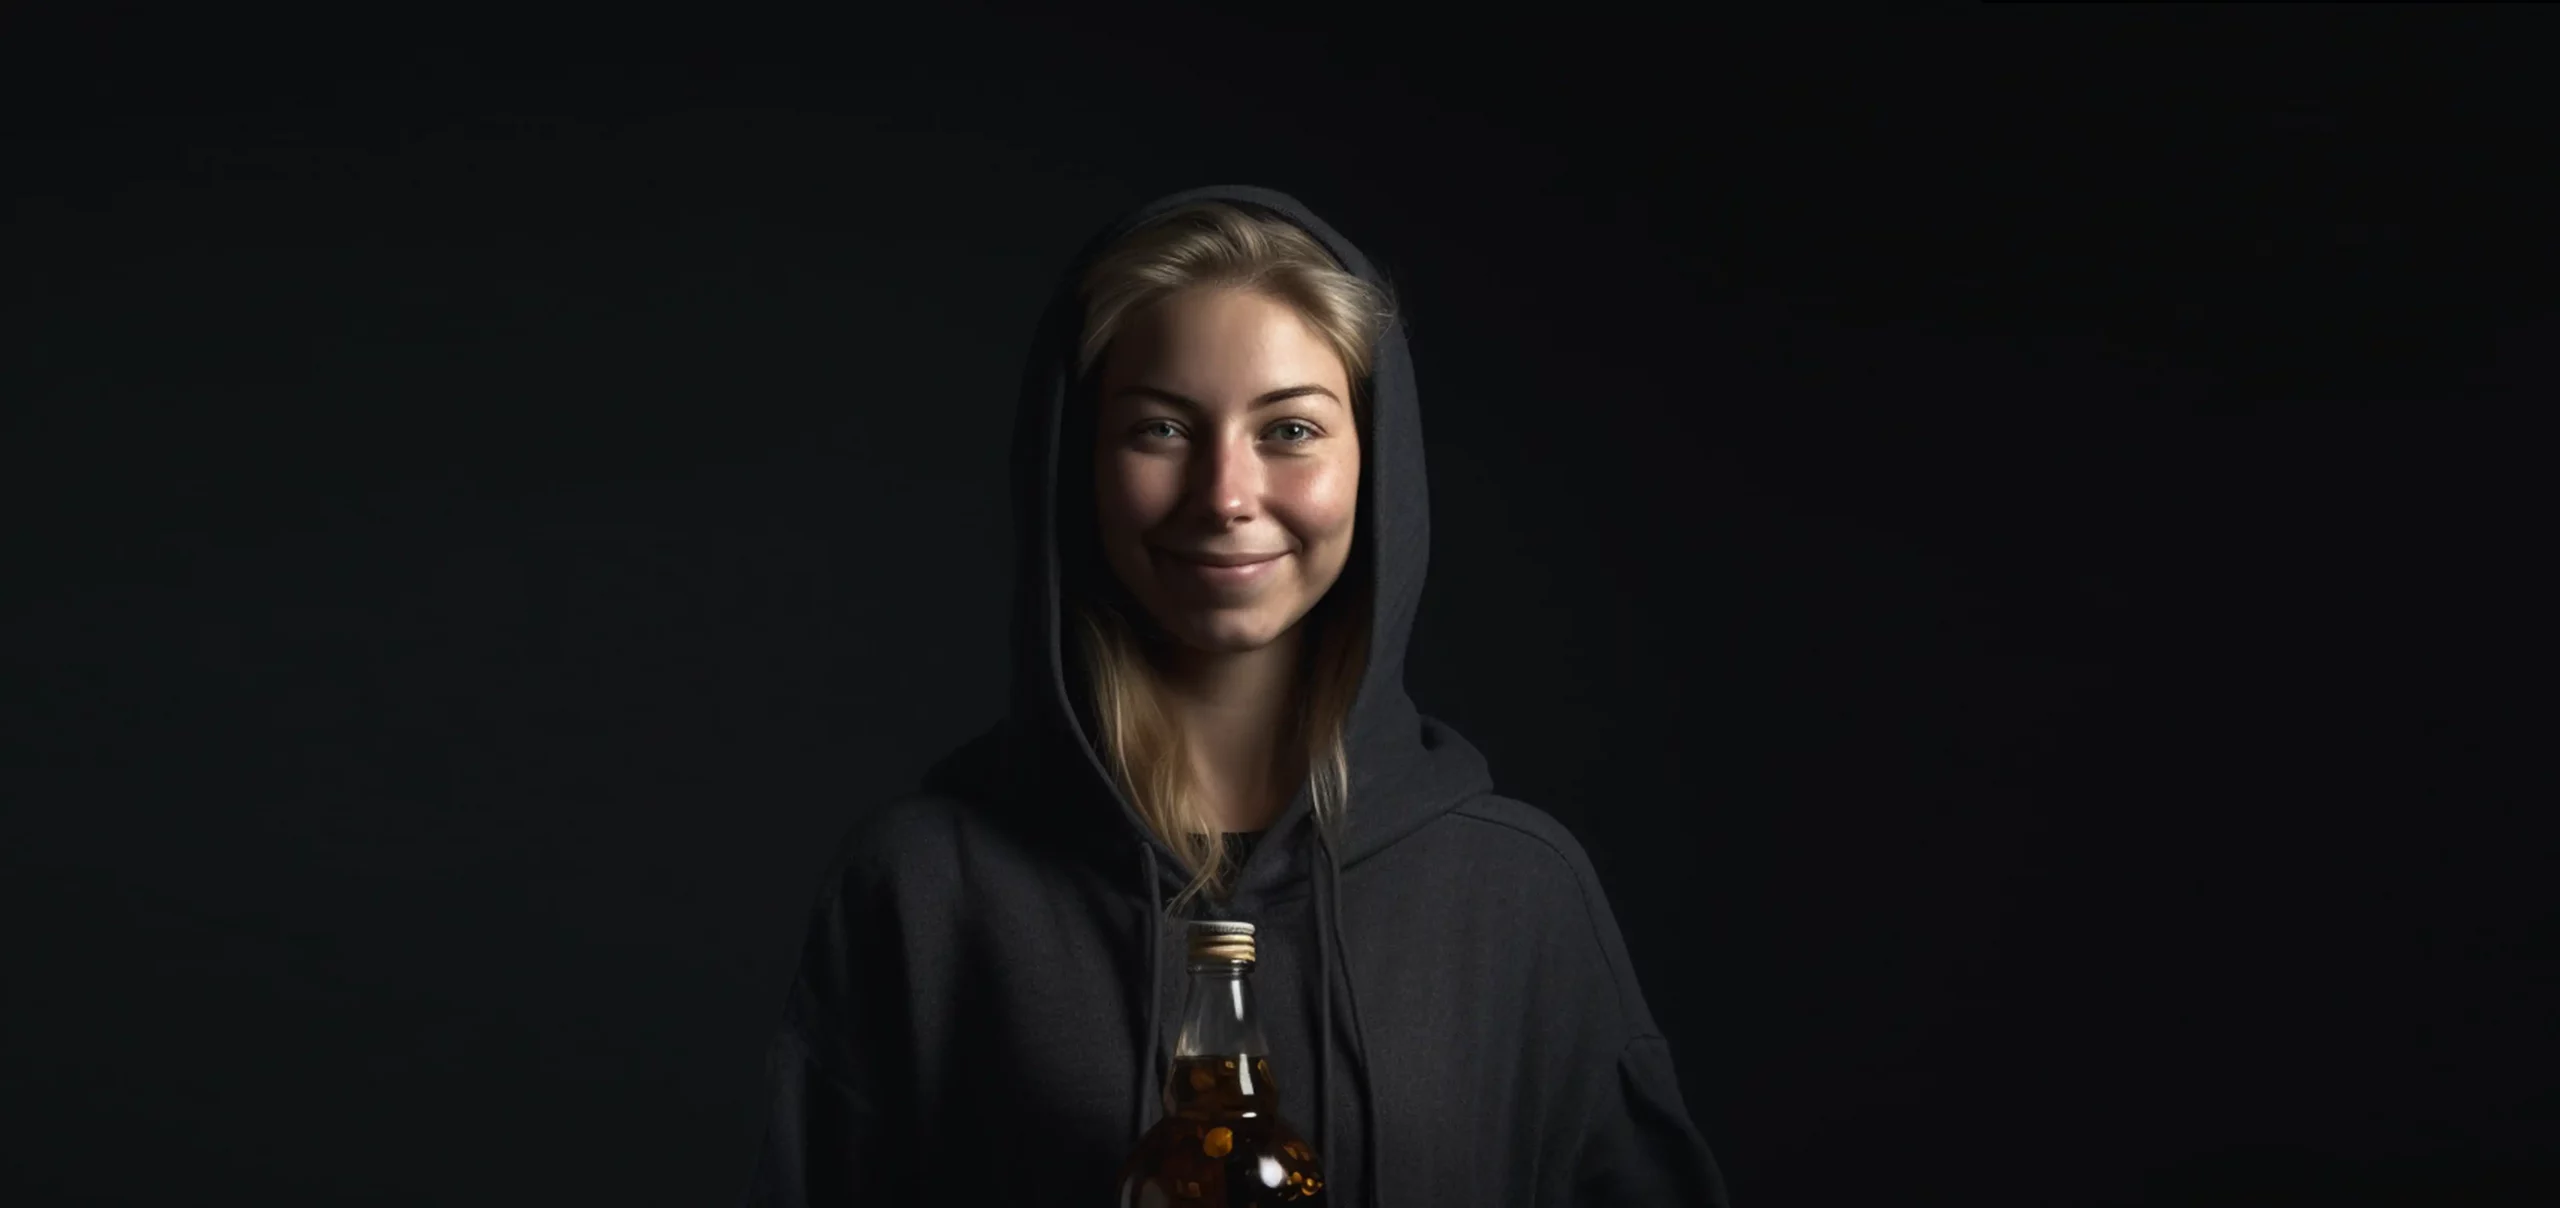 Junge Frau mit rundem Gesicht lächelnd vor dunklem Hintergrund hält eine Flasche in den Händen in der sich Kaltgepresstes Olivenöl und Olivenöl extra vergine befindet